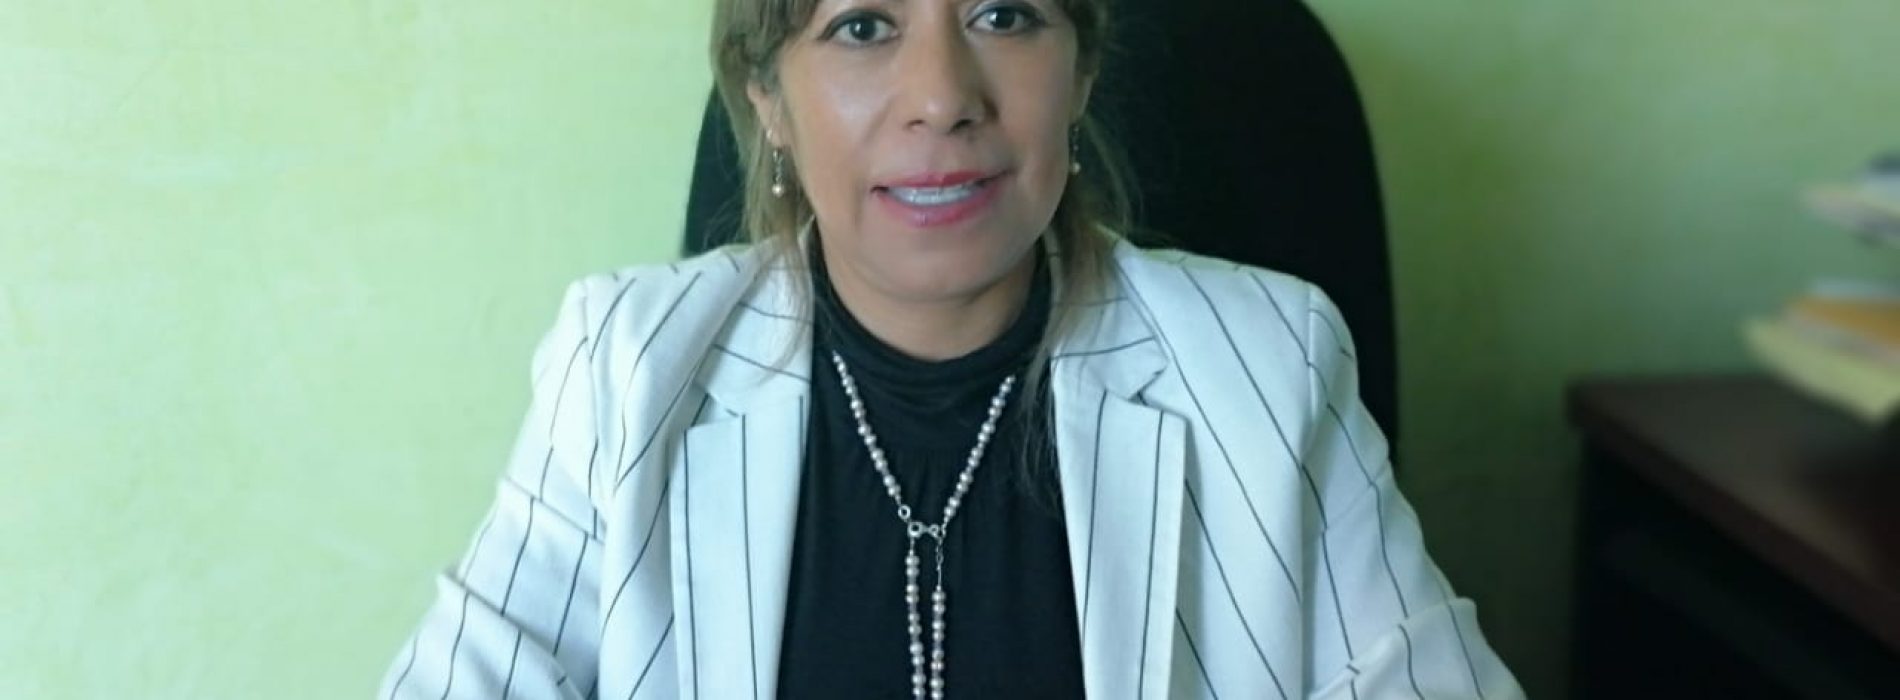 Municipios deberán asignar presupuesto a IMM: Hilda Luis